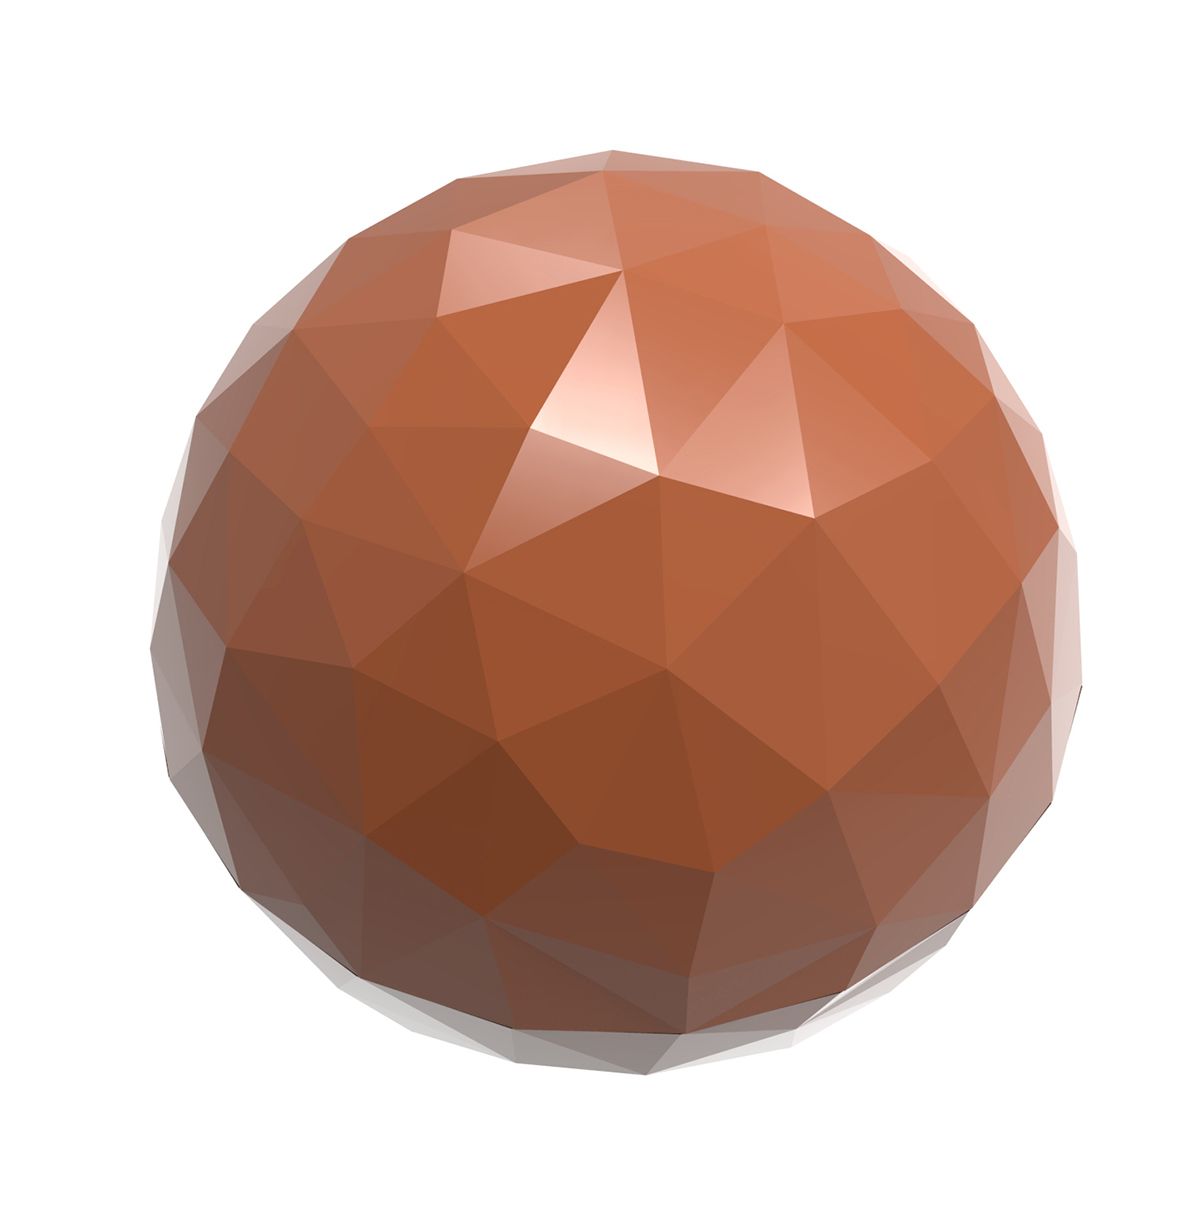 Se Professionel chokoladeform i polycarbonat - Half Sphere facet 2,5 cm CW1909 hos BageTid.dk